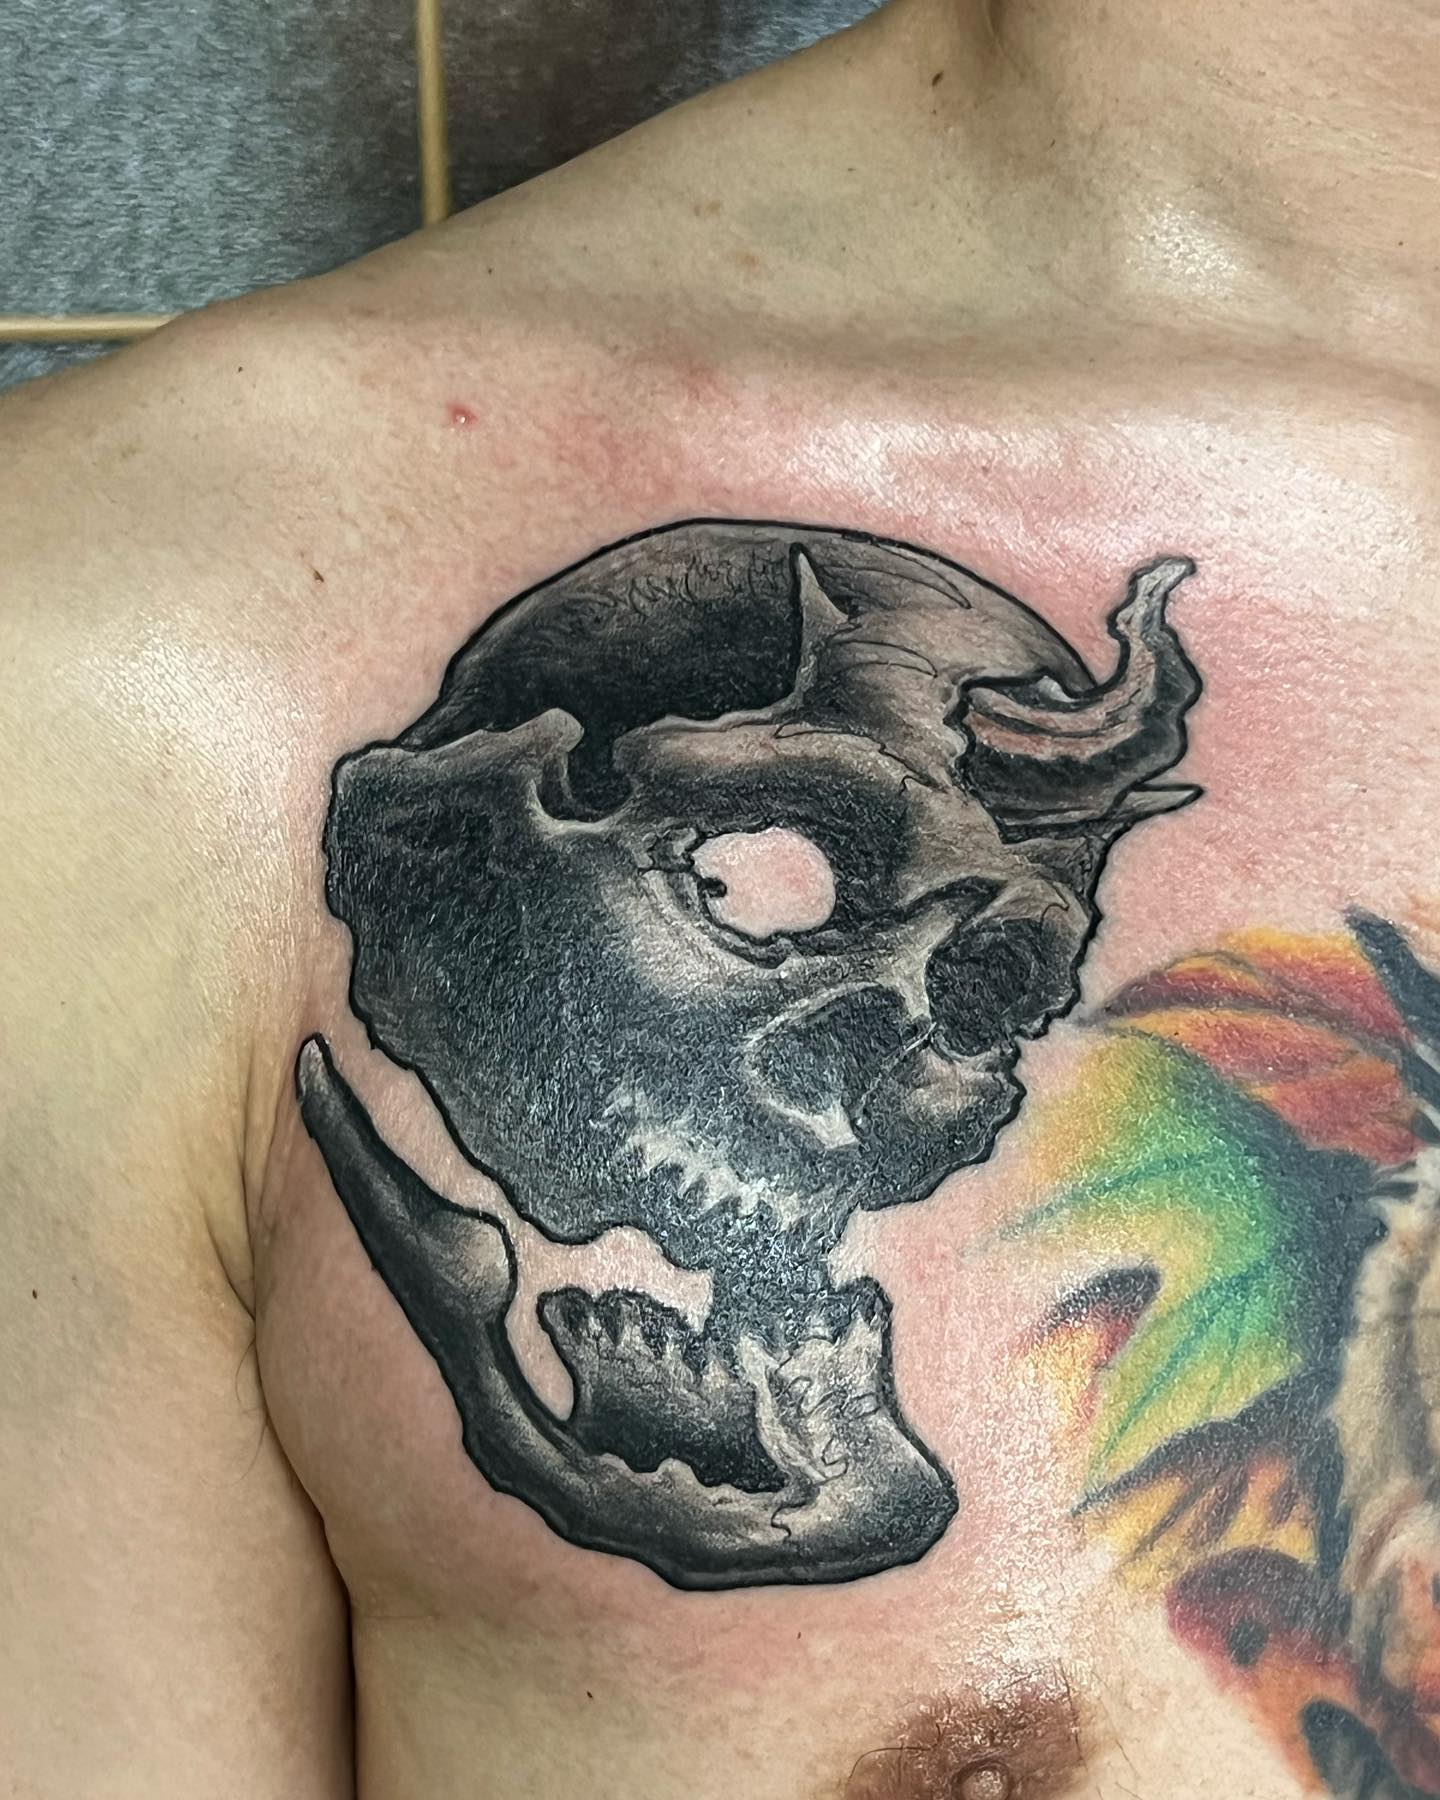 胸 #スカル#skull #skulltattoo #tattoo #ink #freehand #blackandgray #56 #56tattoo #tokyo #horimasa #スカル #ガイコツ #インク #タトゥー #フリーハンド #ブラックアンドグレー #骸骨 #刺青 #墨 #東京 #彫雅